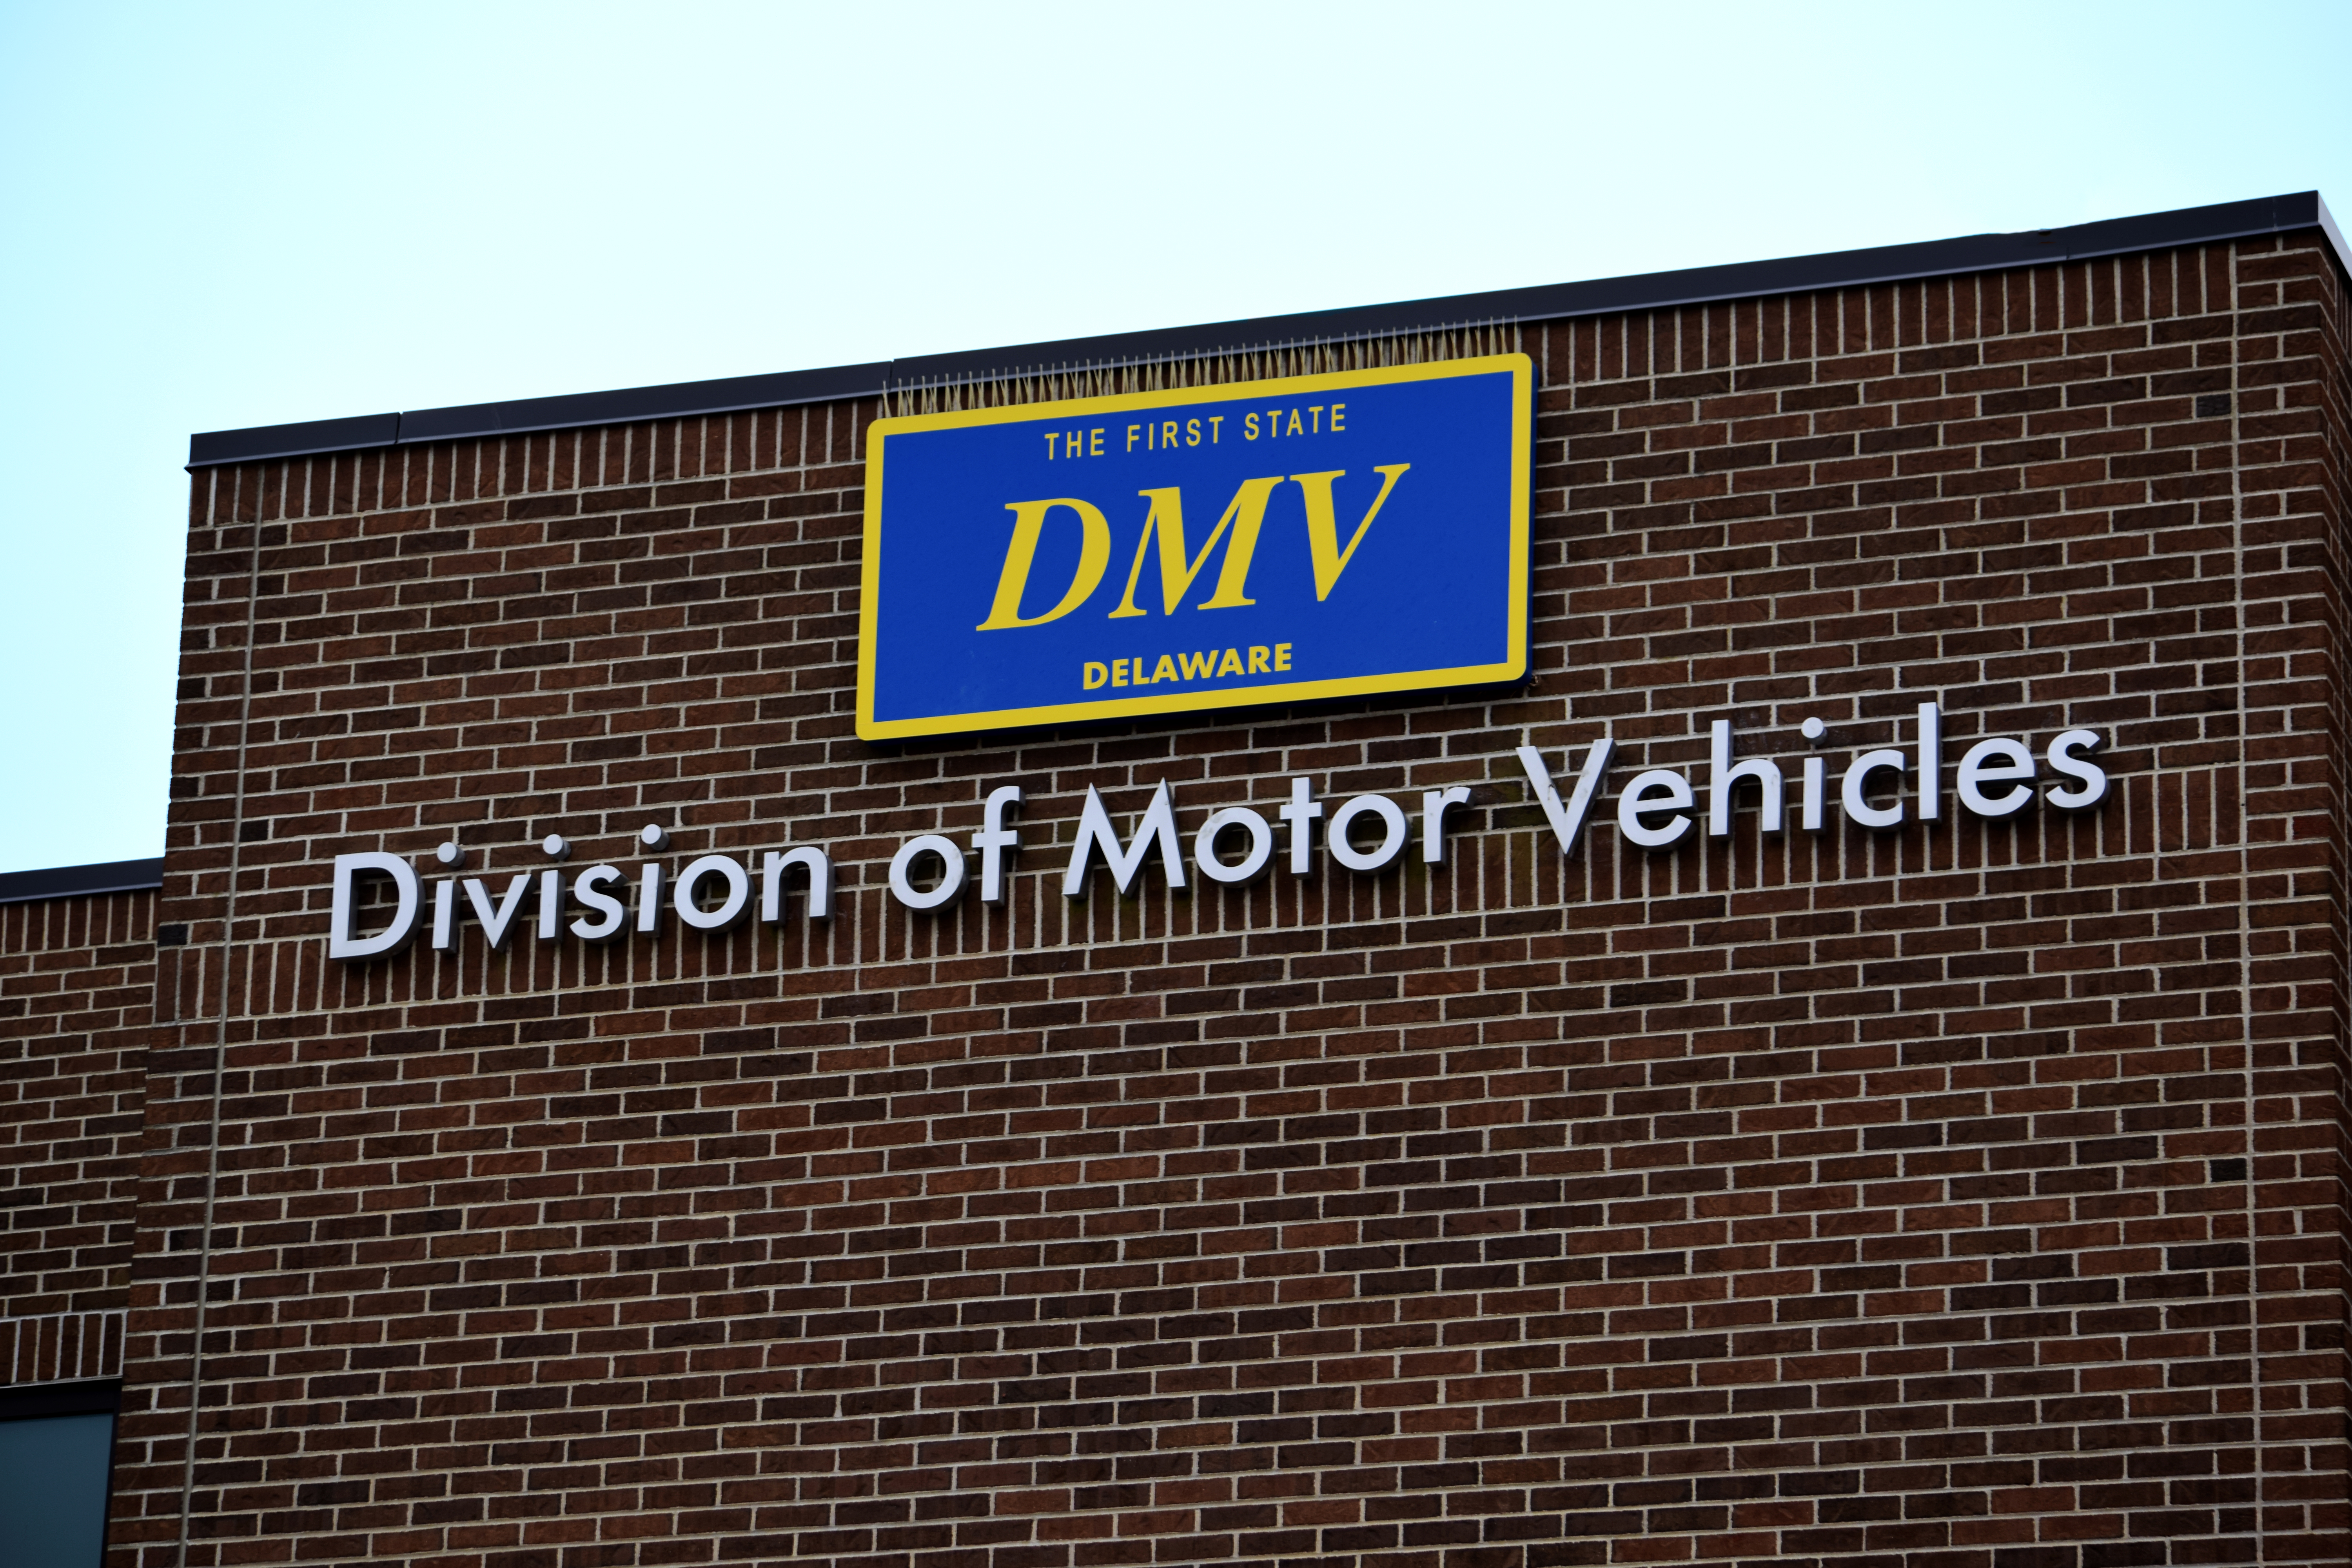 Delaware DMV sign